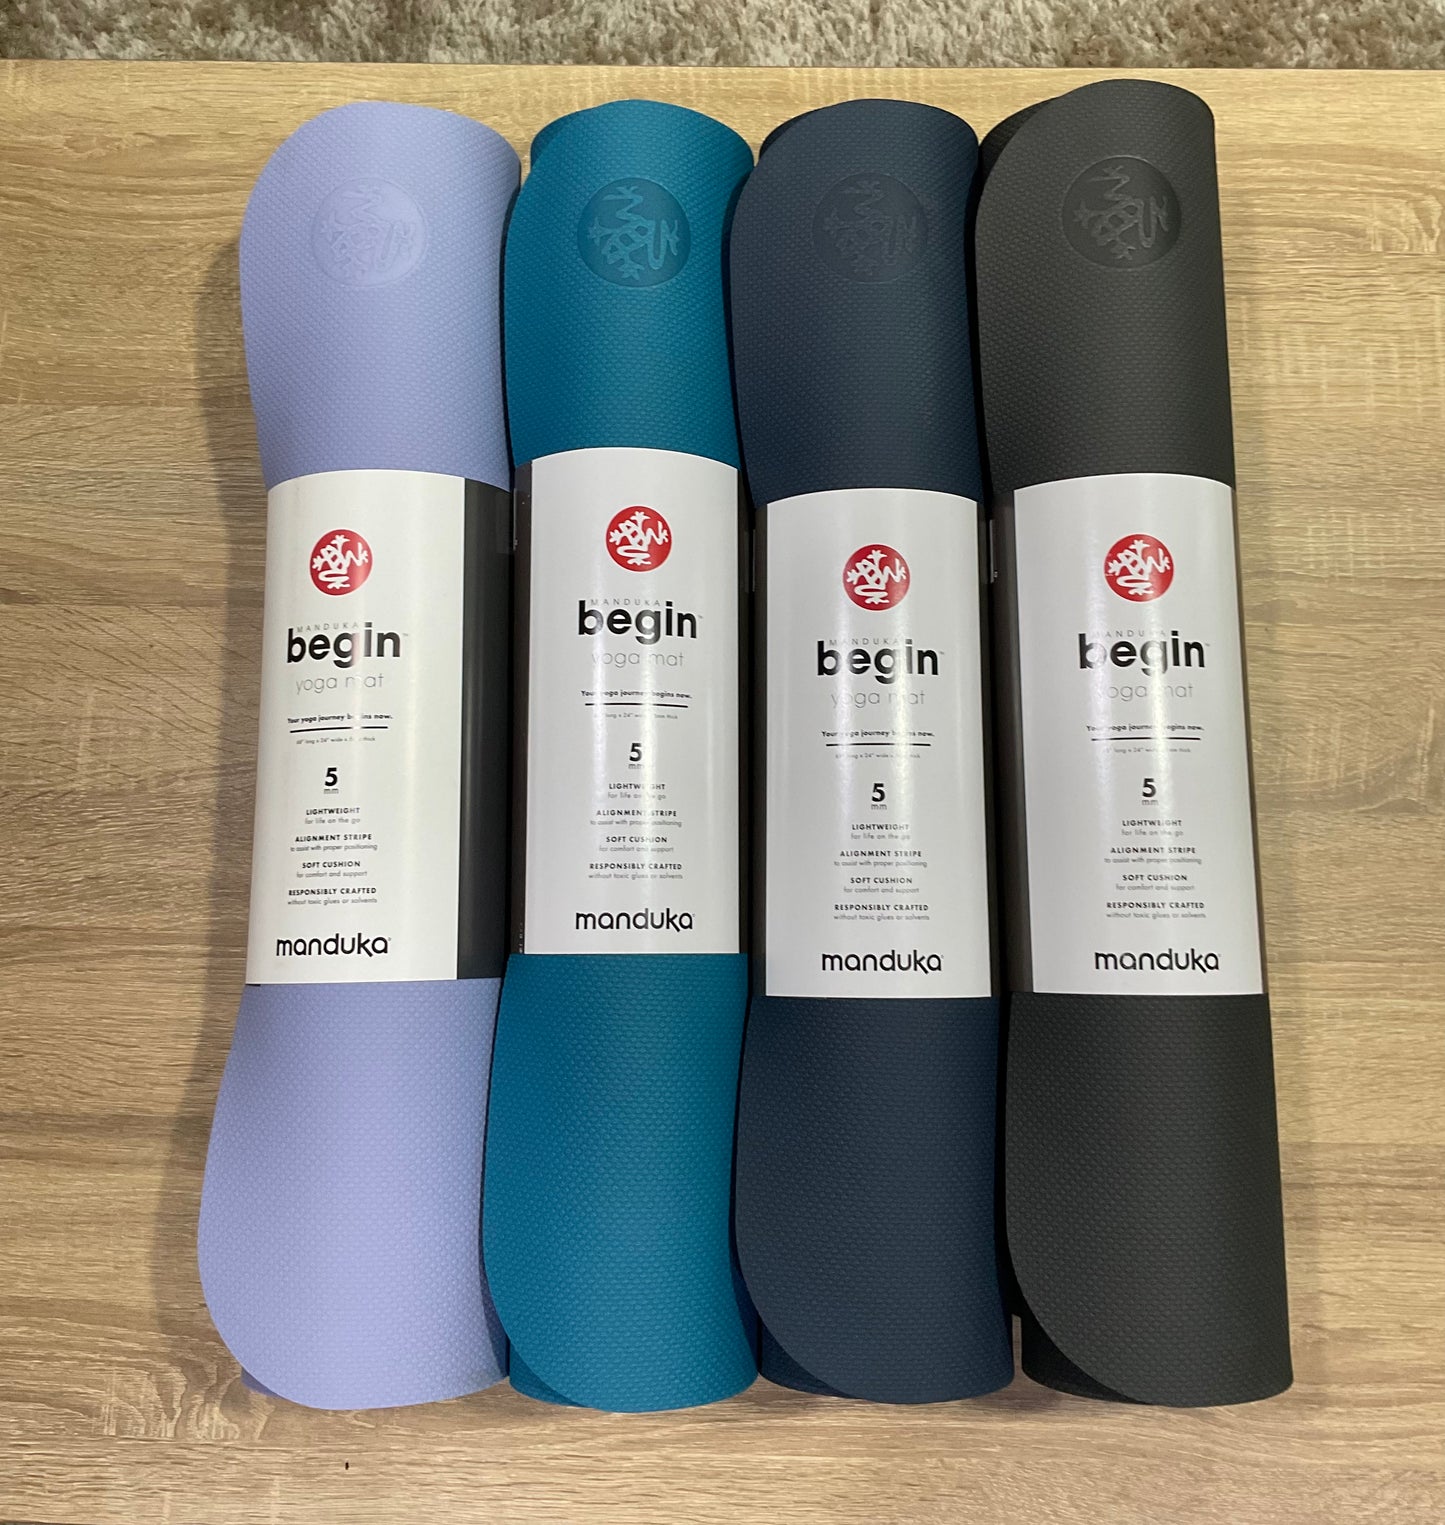 Manduka Begin Yoga Mat 5mm - Bondi Biru